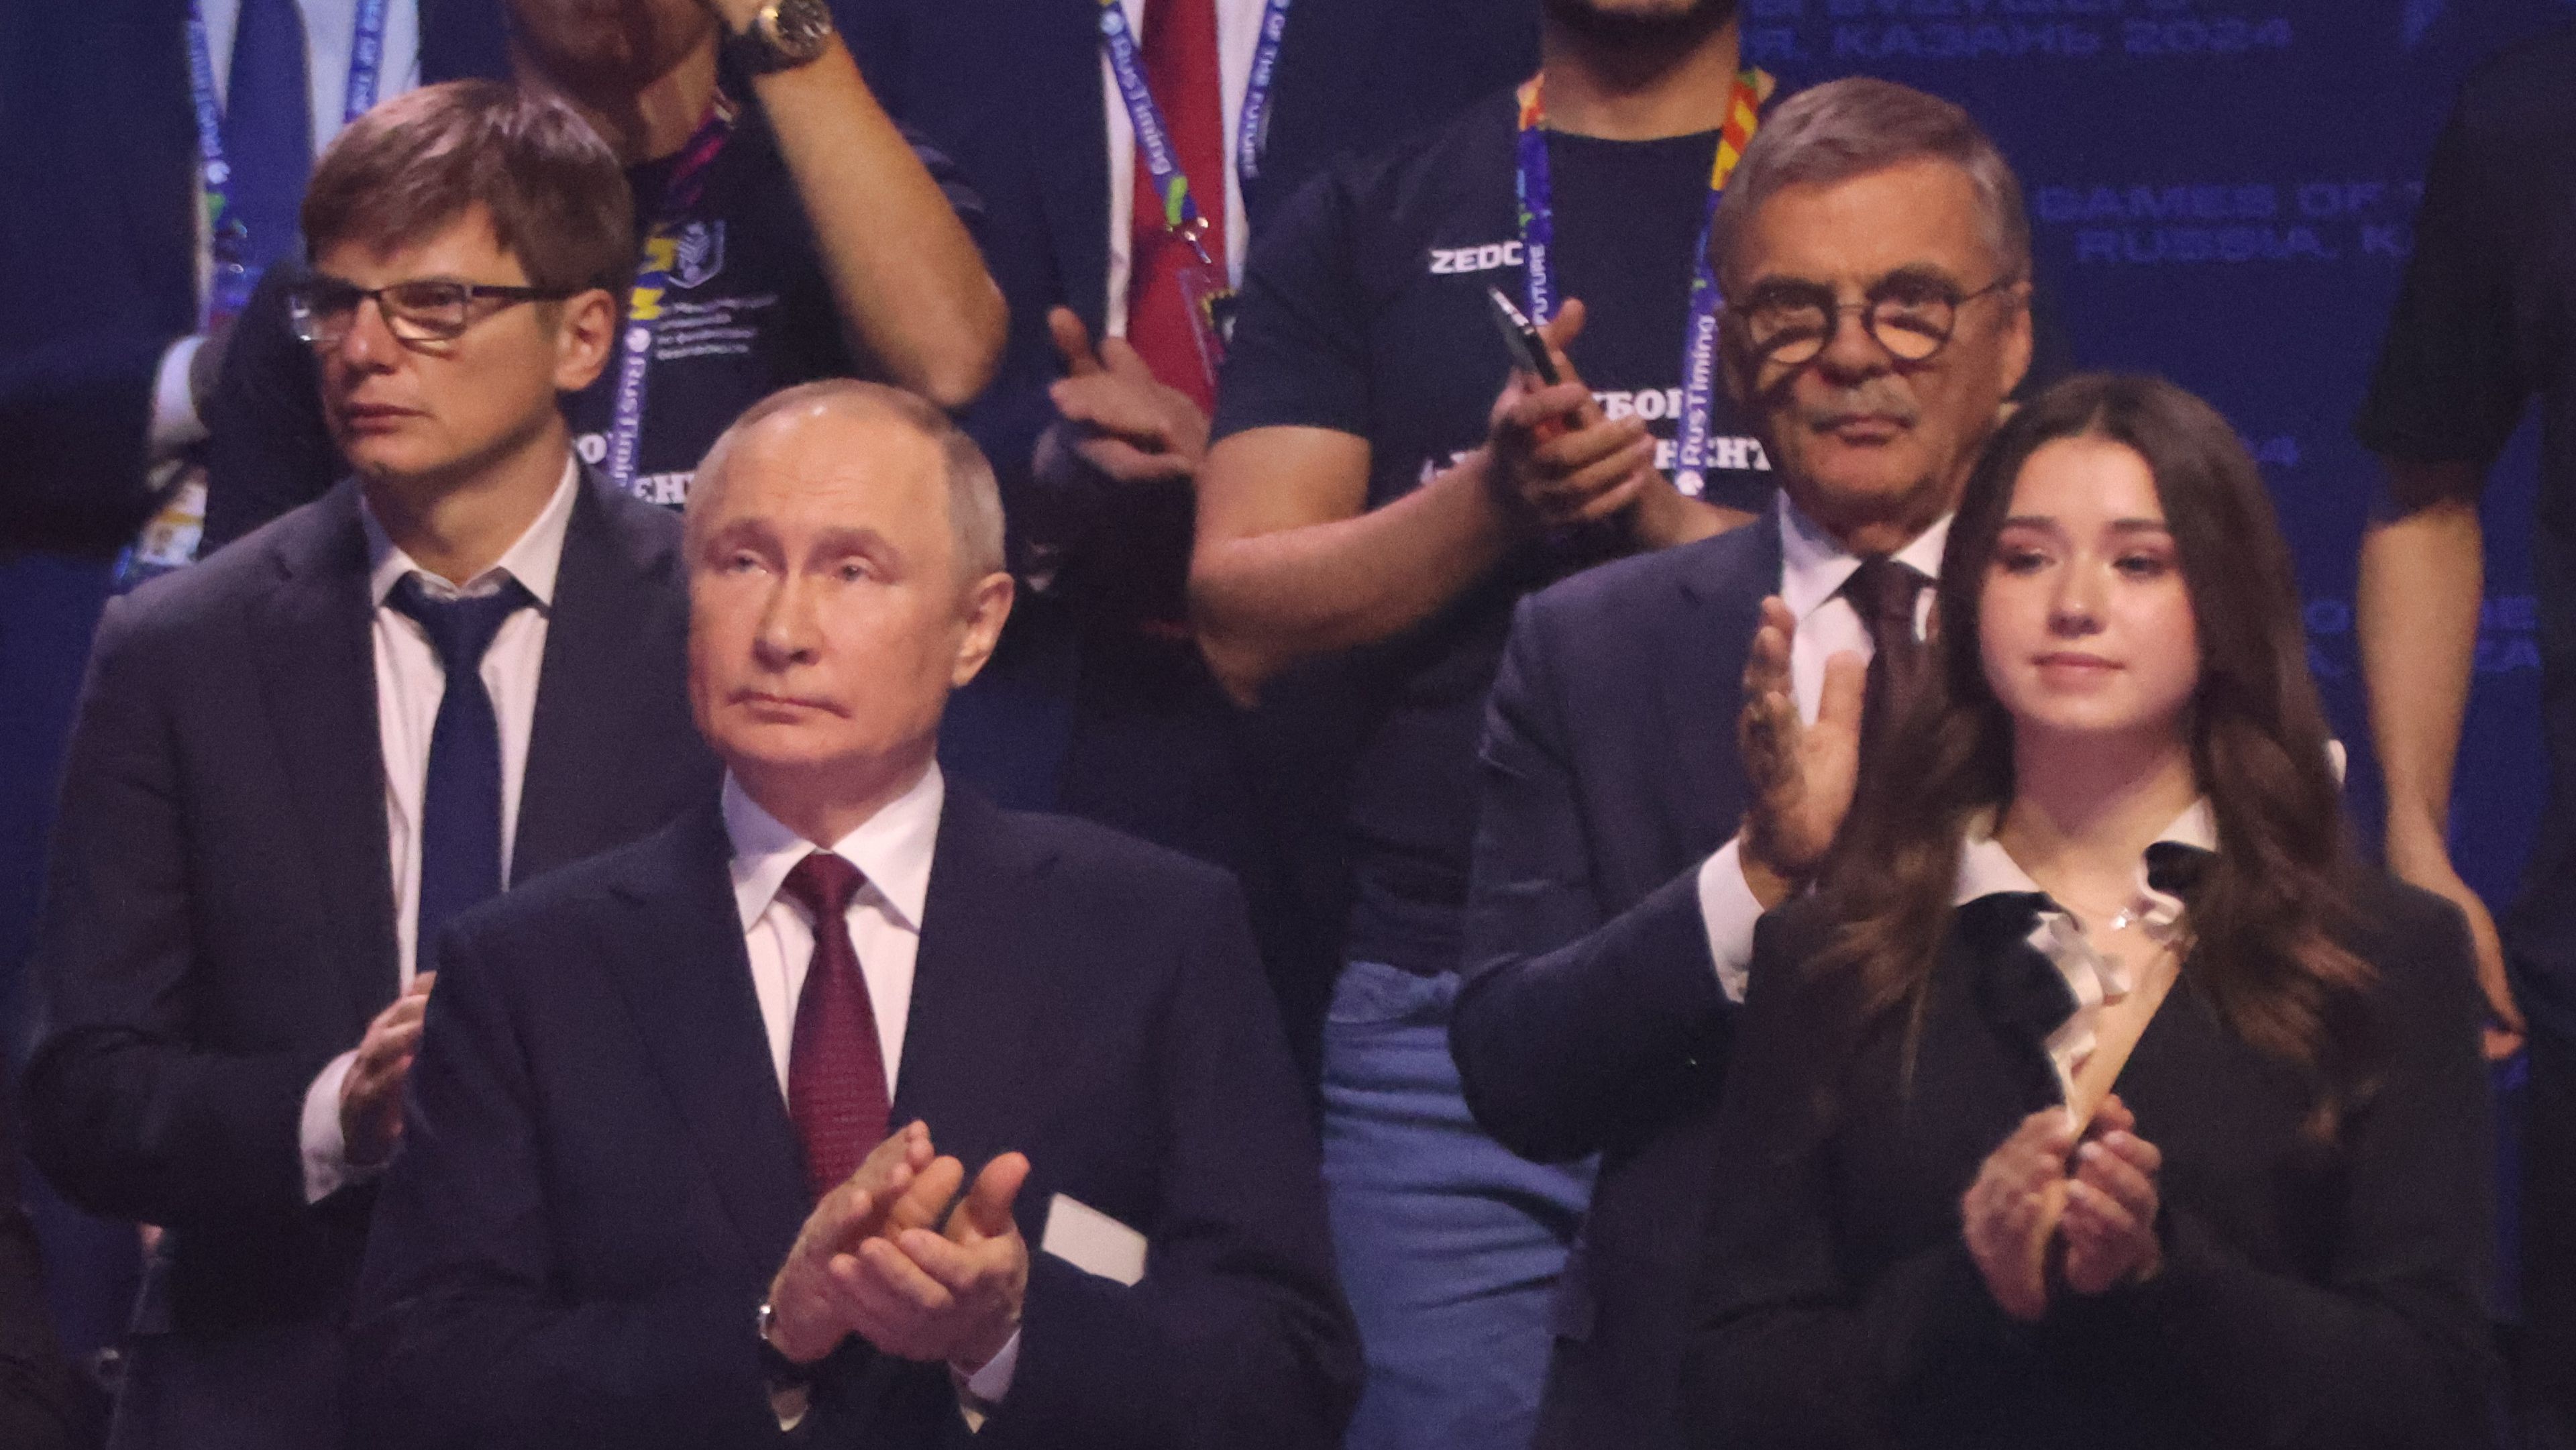 Kárpótlás? Nem korcsolyázhat, de Putyin mellett tapsolhat... (Fotó: Getty Images)